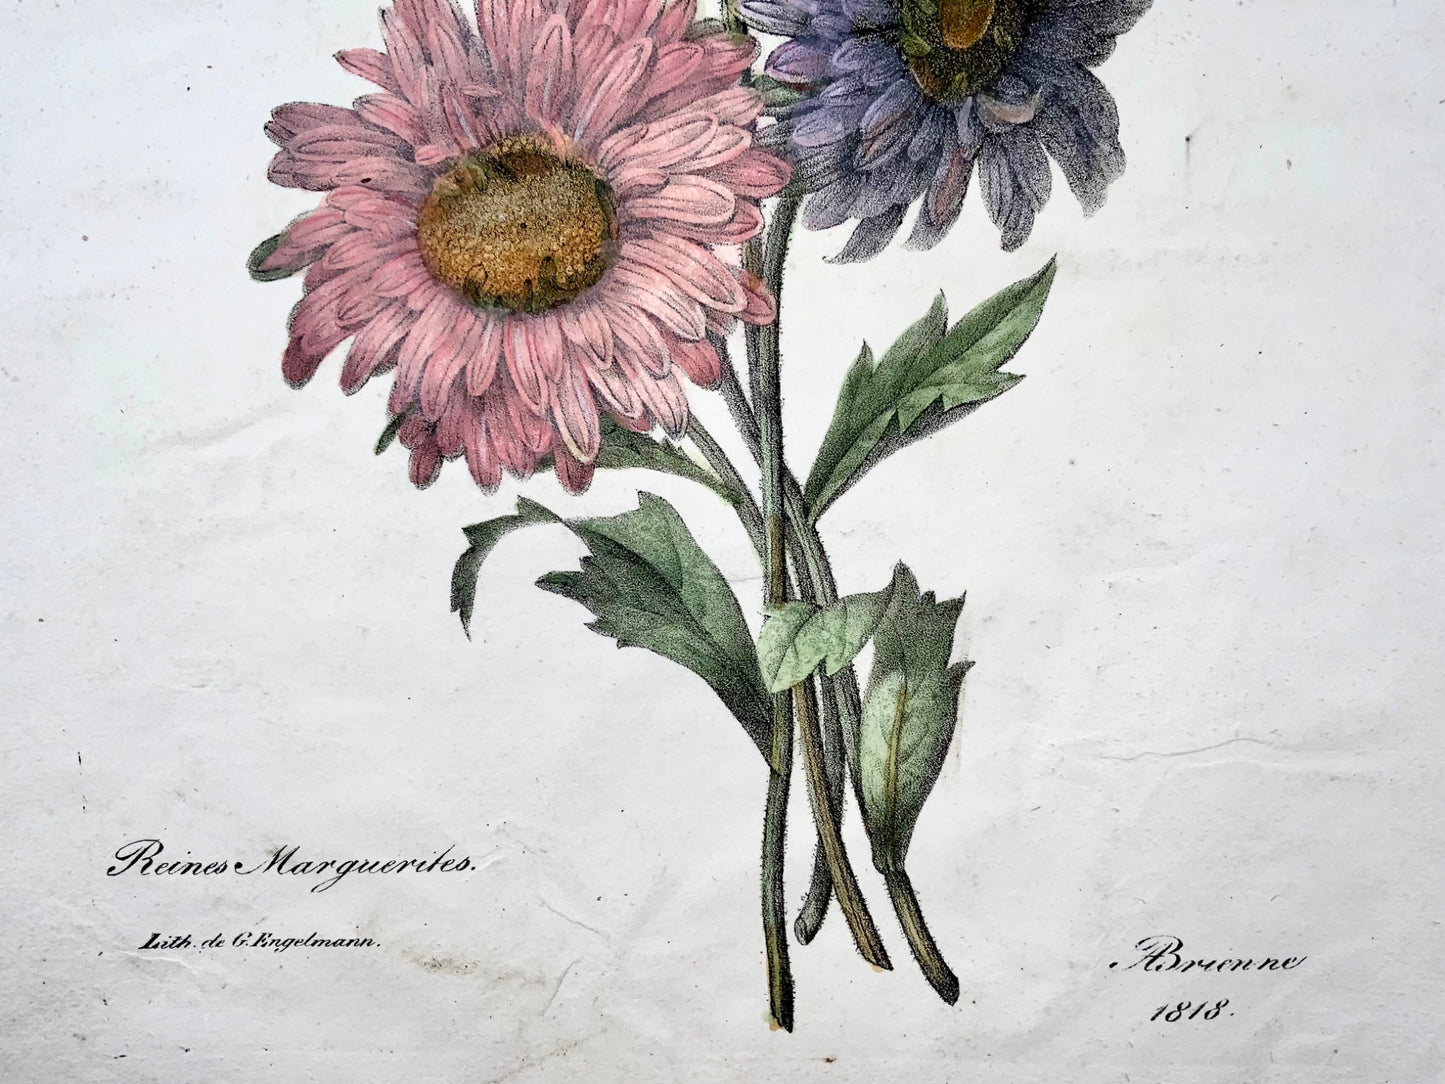 1818 AP de Brienne ; folio, botanique, marguerites, incunables de lithographie